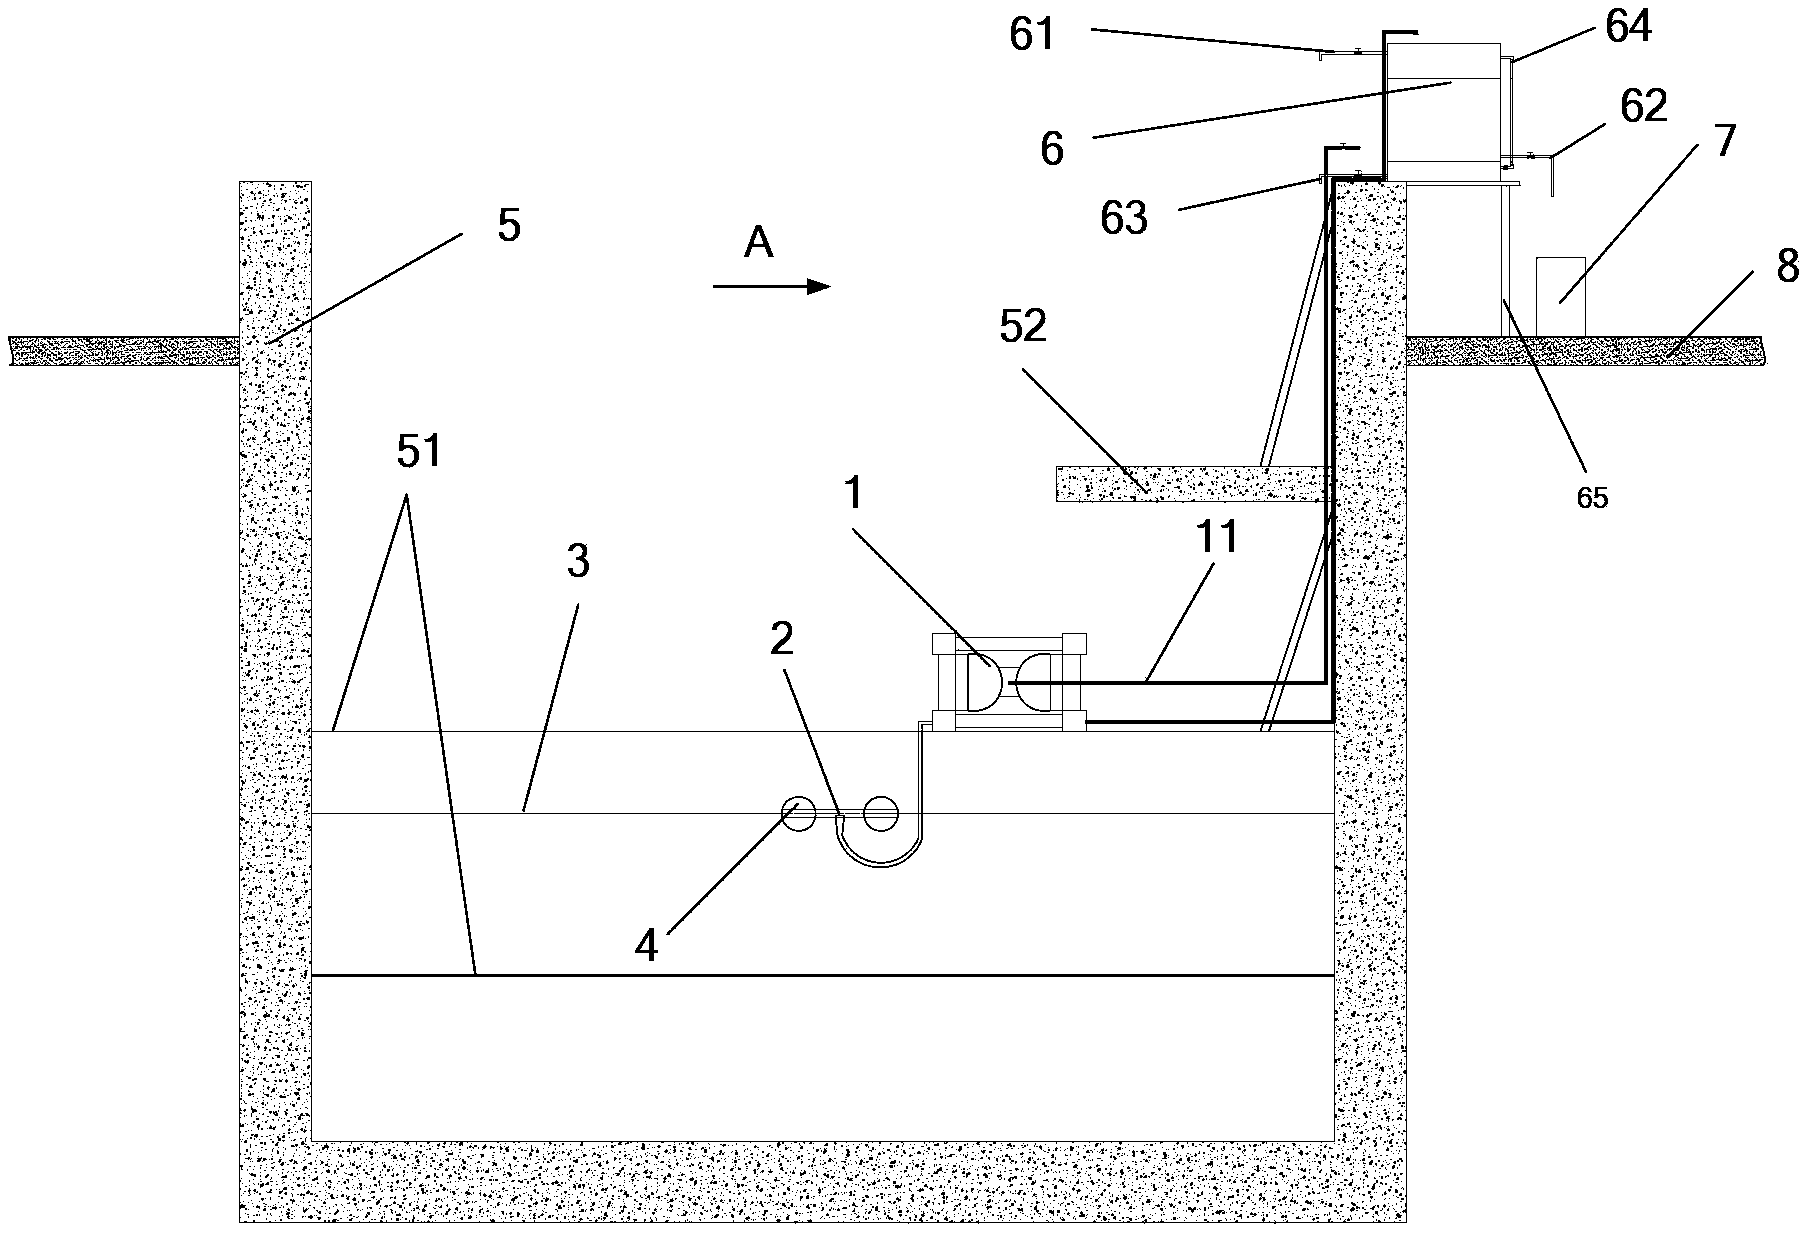 Oil-water separating apparatus